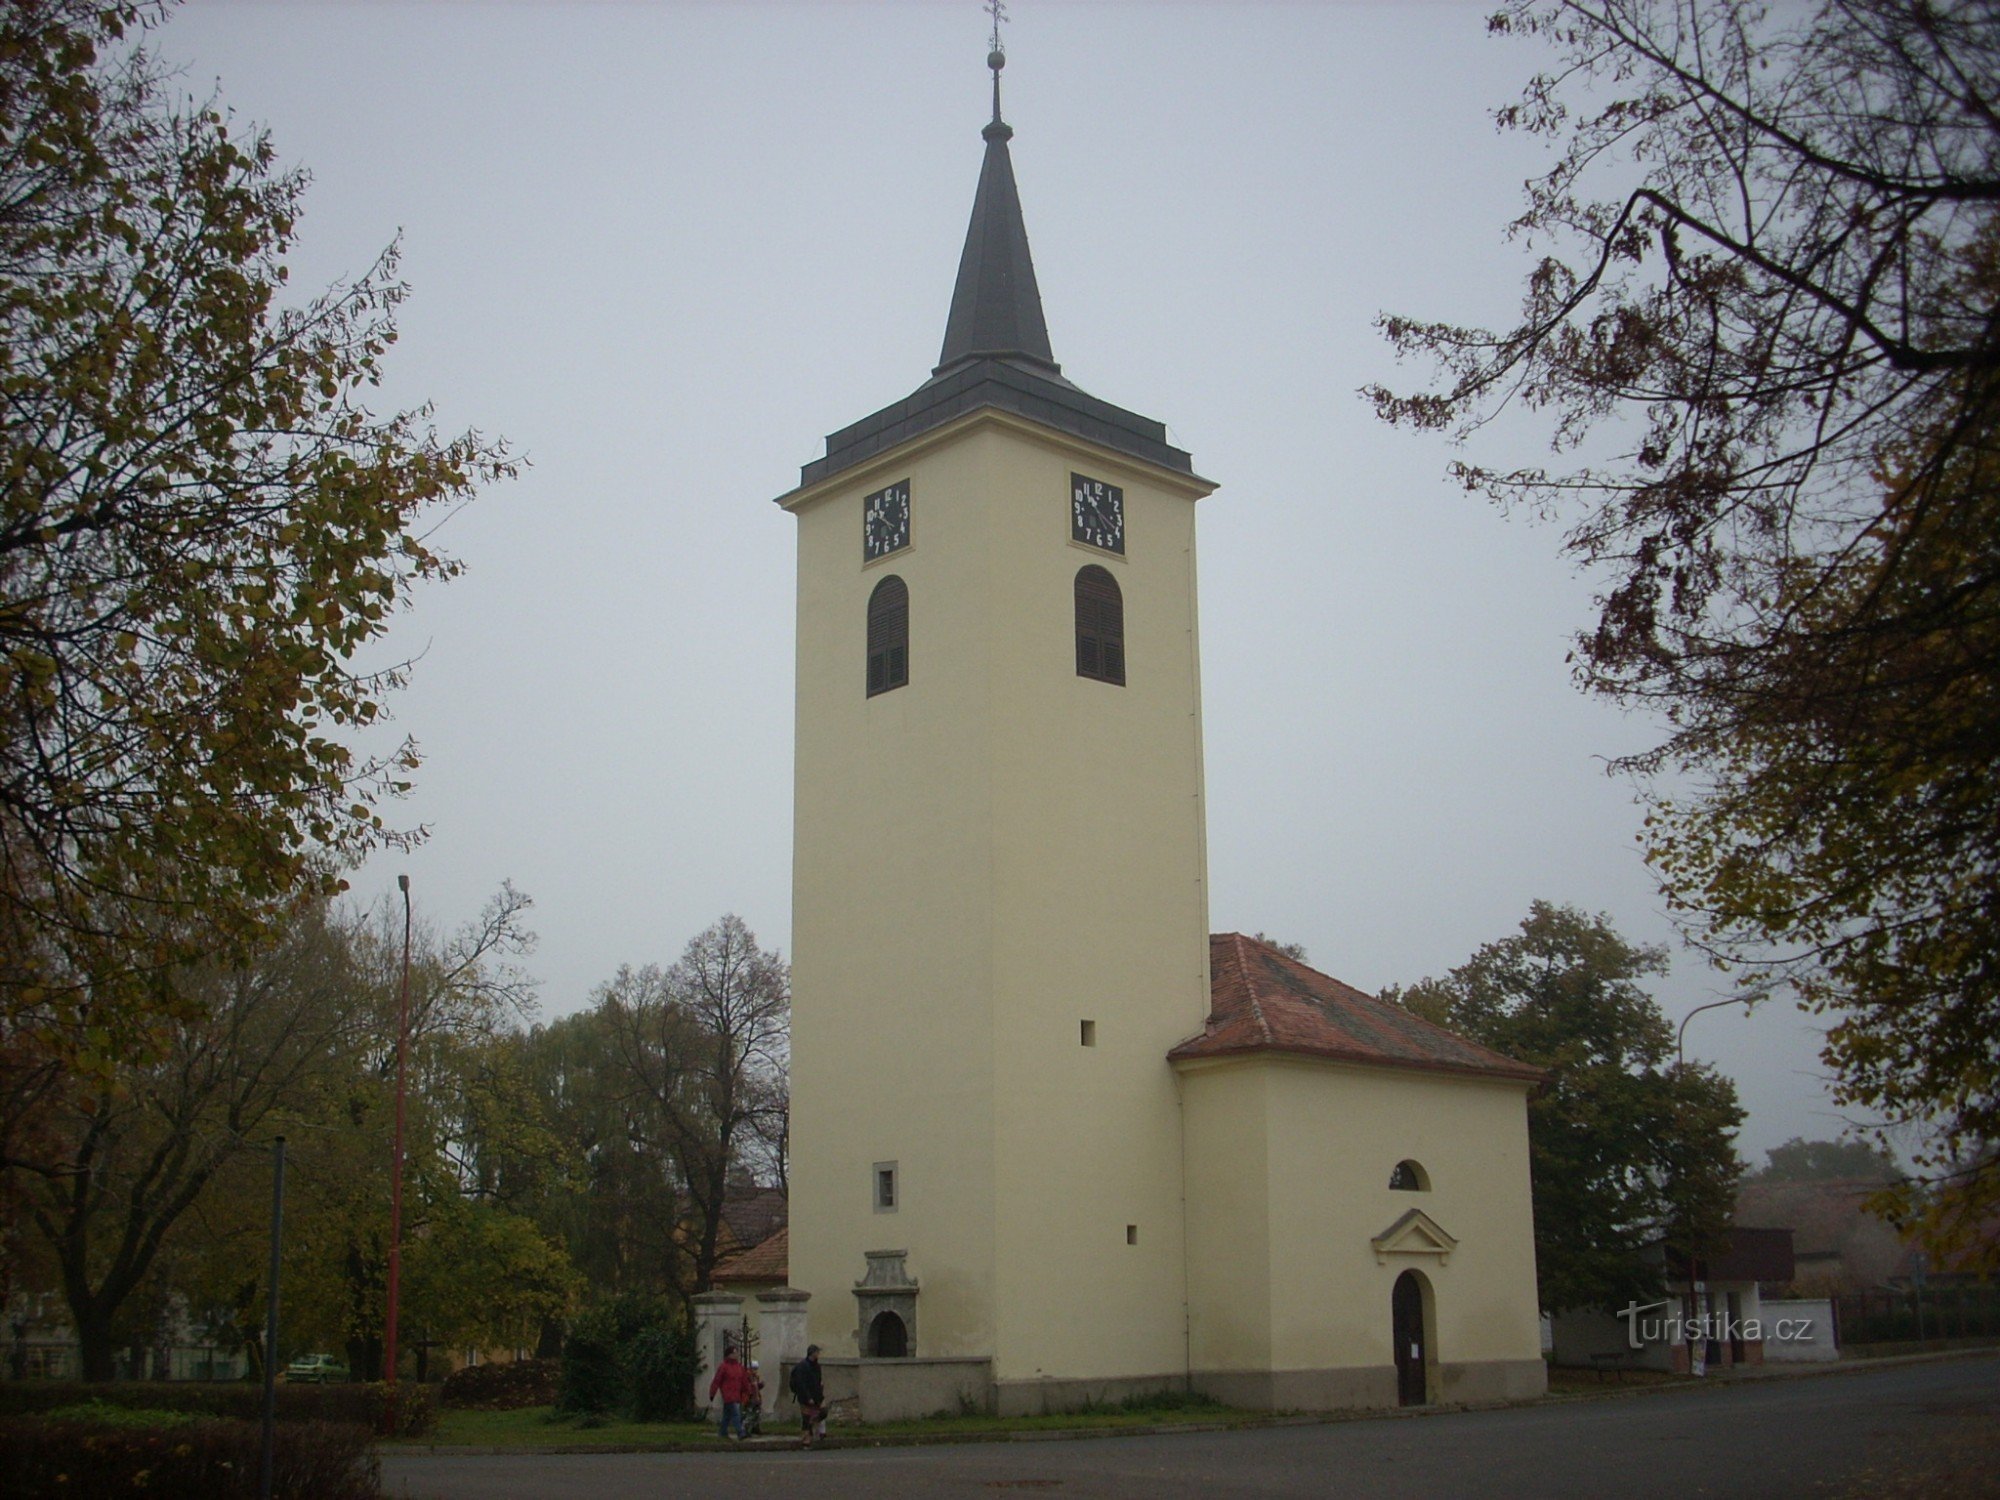 Biserica Sf. Jan Nepomuk